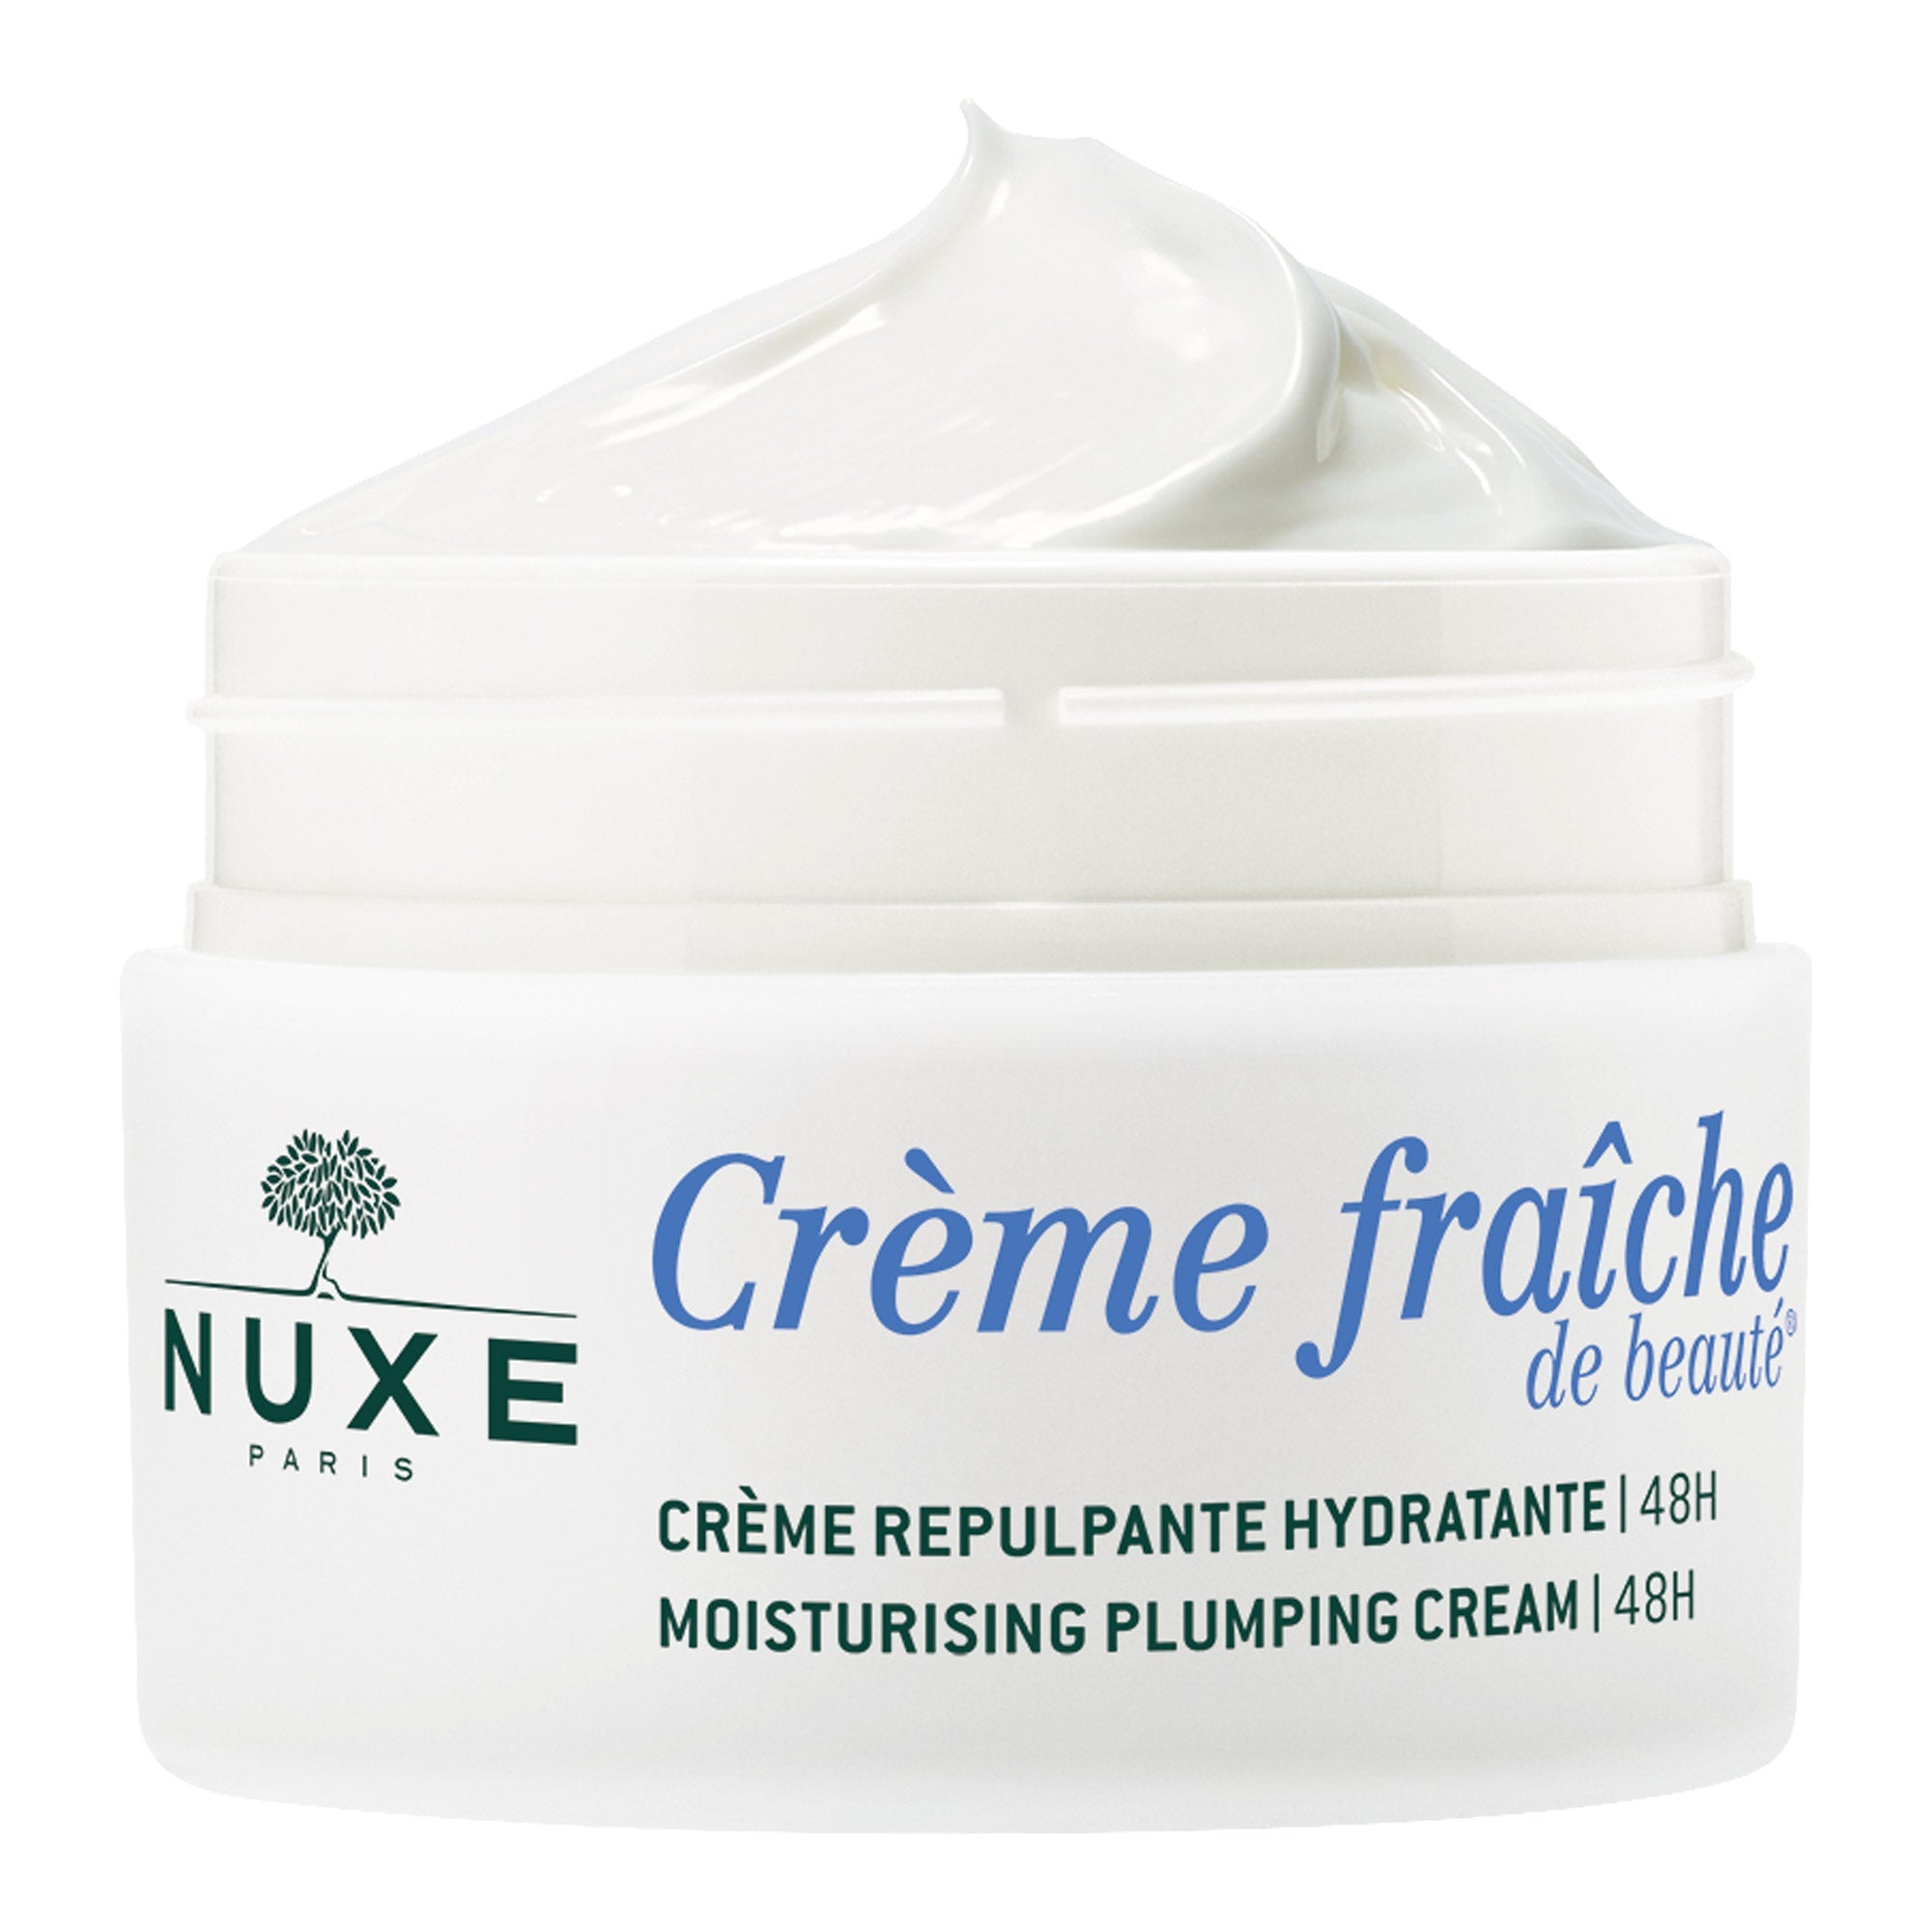 Nuxe Creme Fraiche Plumping Cream 48HR 50 ml